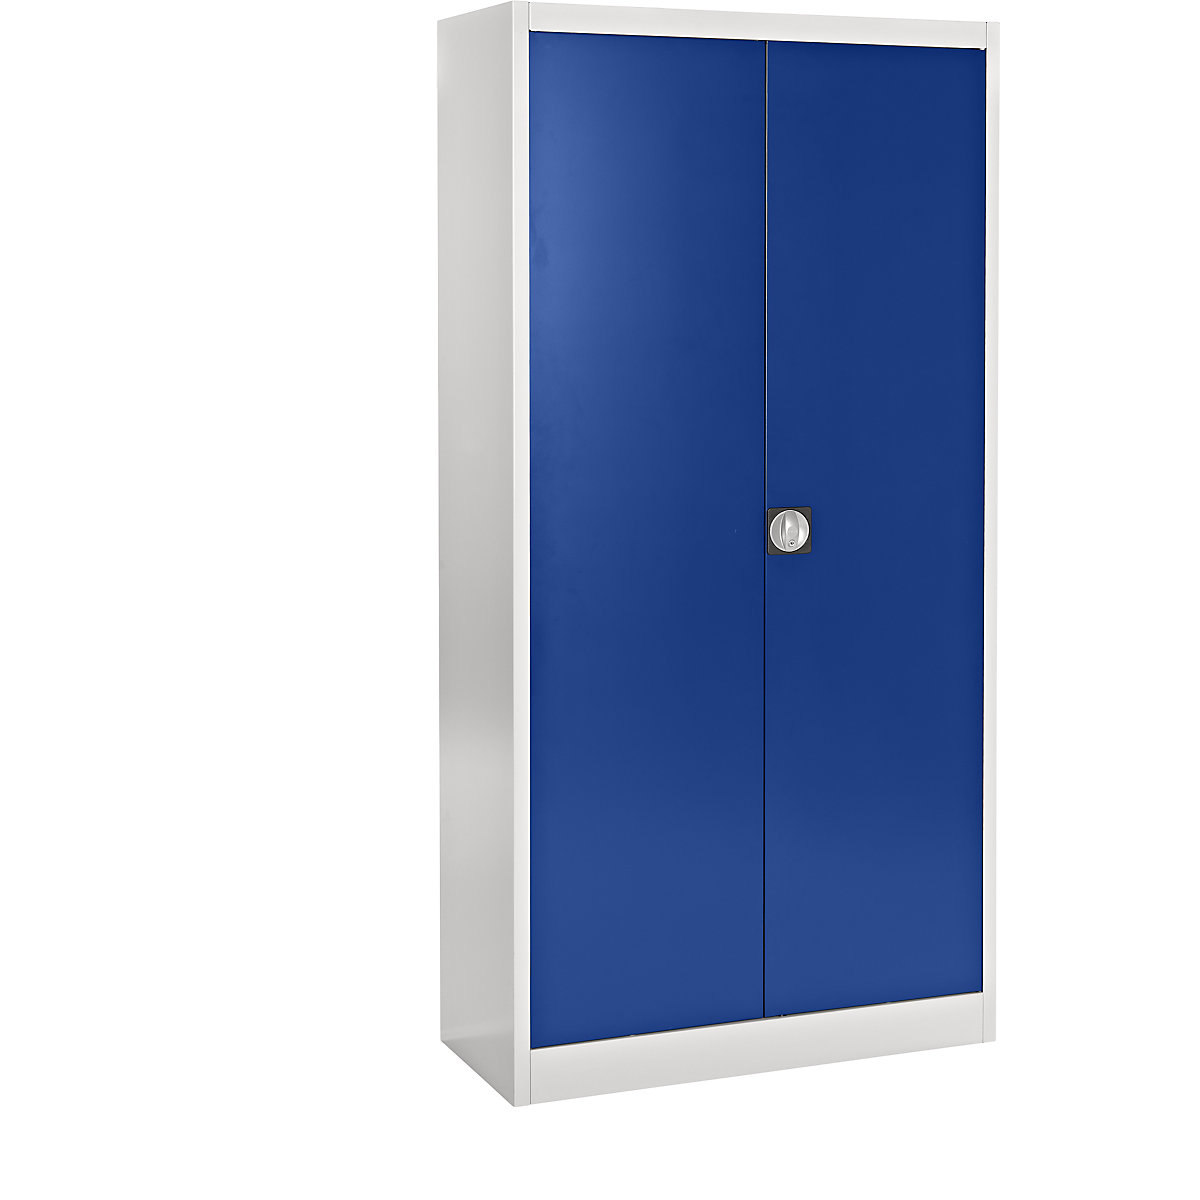 mauser – Armoire métallique à portes escamotables, 4 tablettes, profondeur 420 mm, gris clair / bleu marine